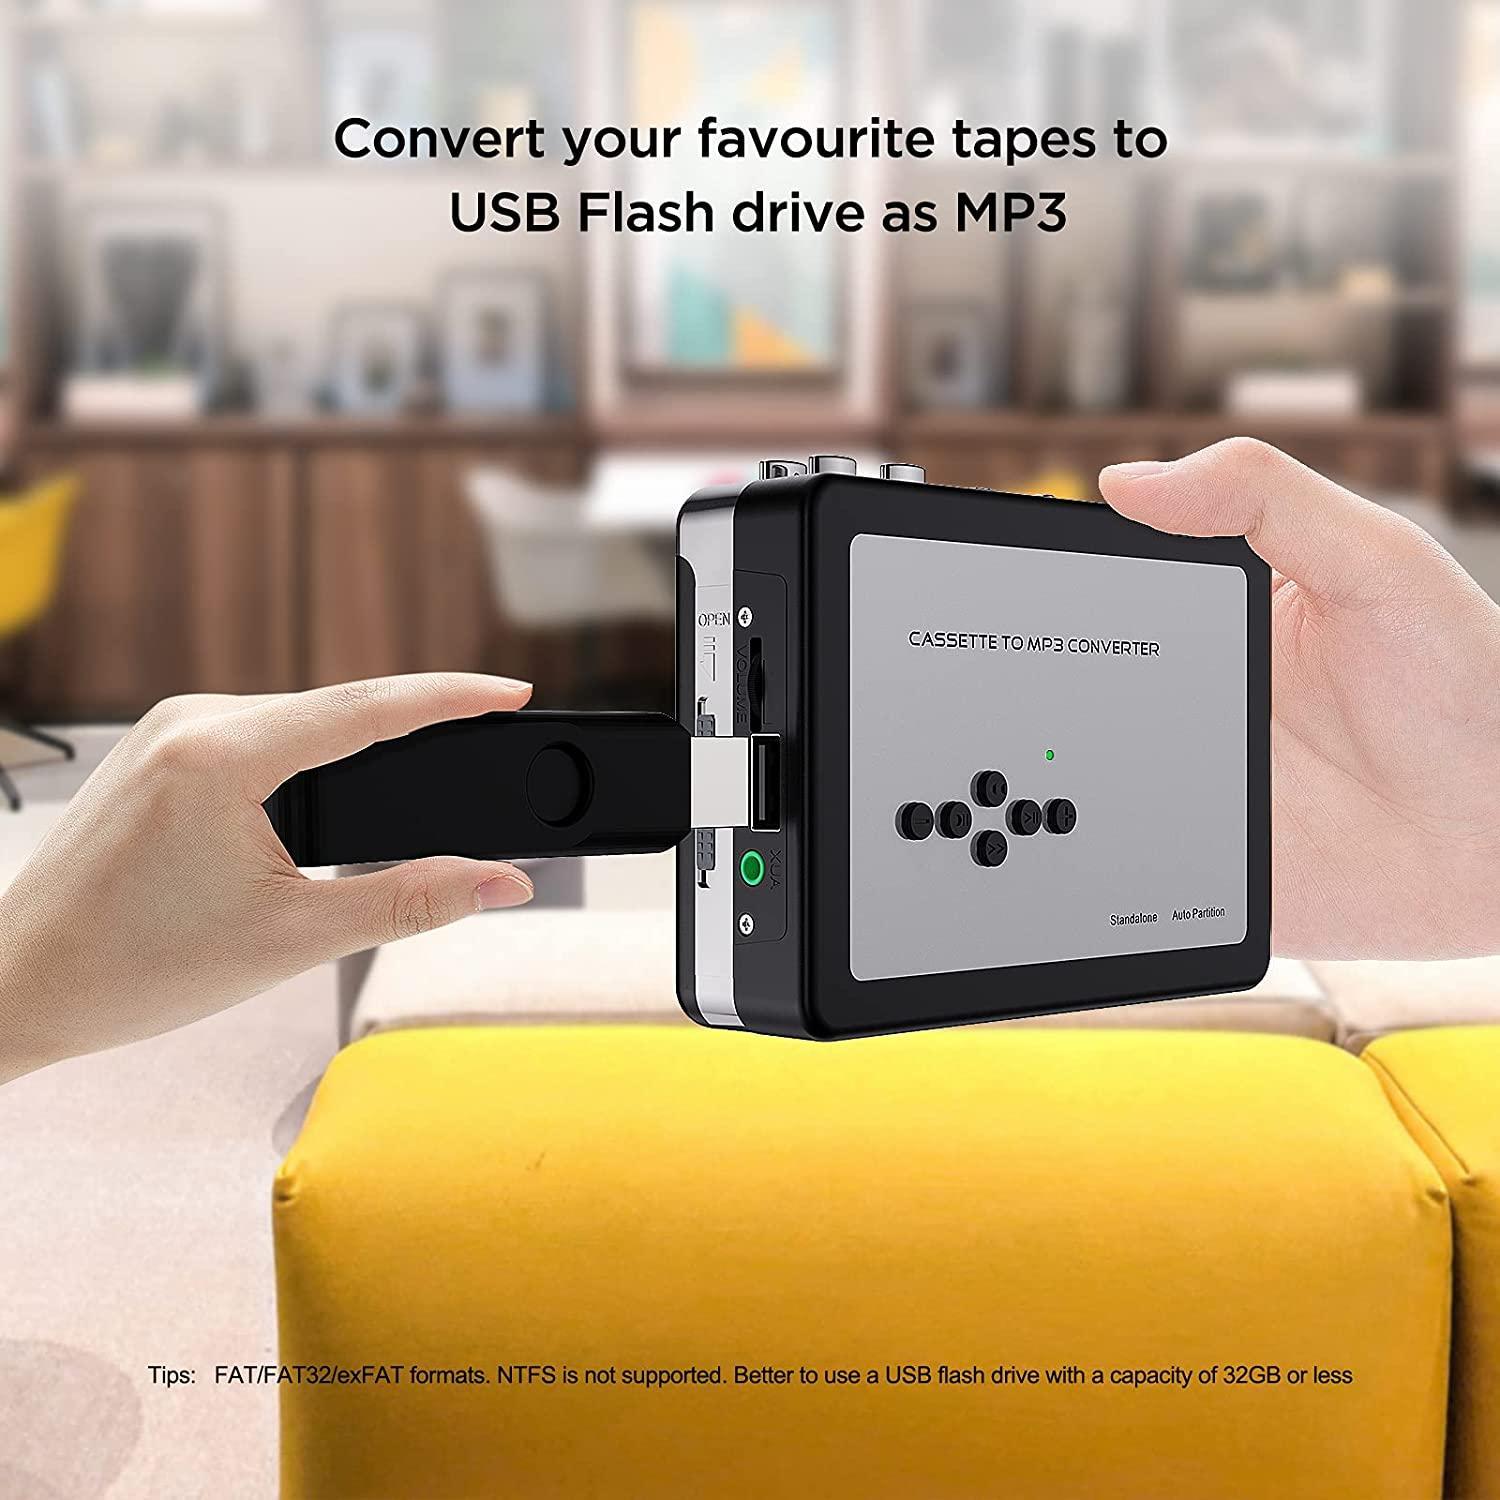 Ezcap kassett til MP3-konverter digital kassettspiller konverterer kassetter til MP3 til USB-minnepinne Ingen datamaskin nødvendig